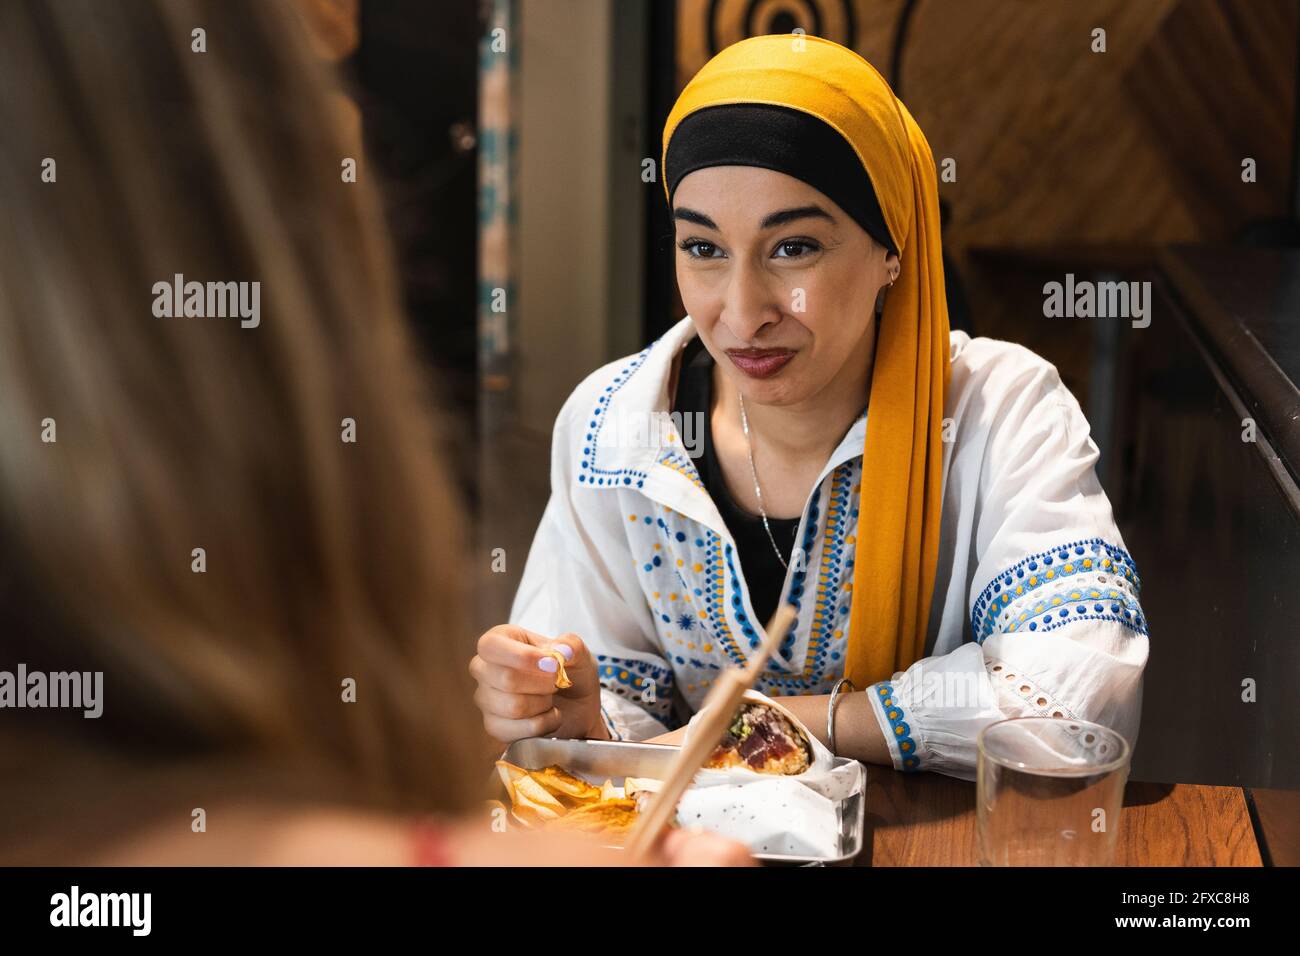 Junge Frau mit Kopftuch, die eine Freundin anschaut, während sie im Restaurant essen geht Stockfoto